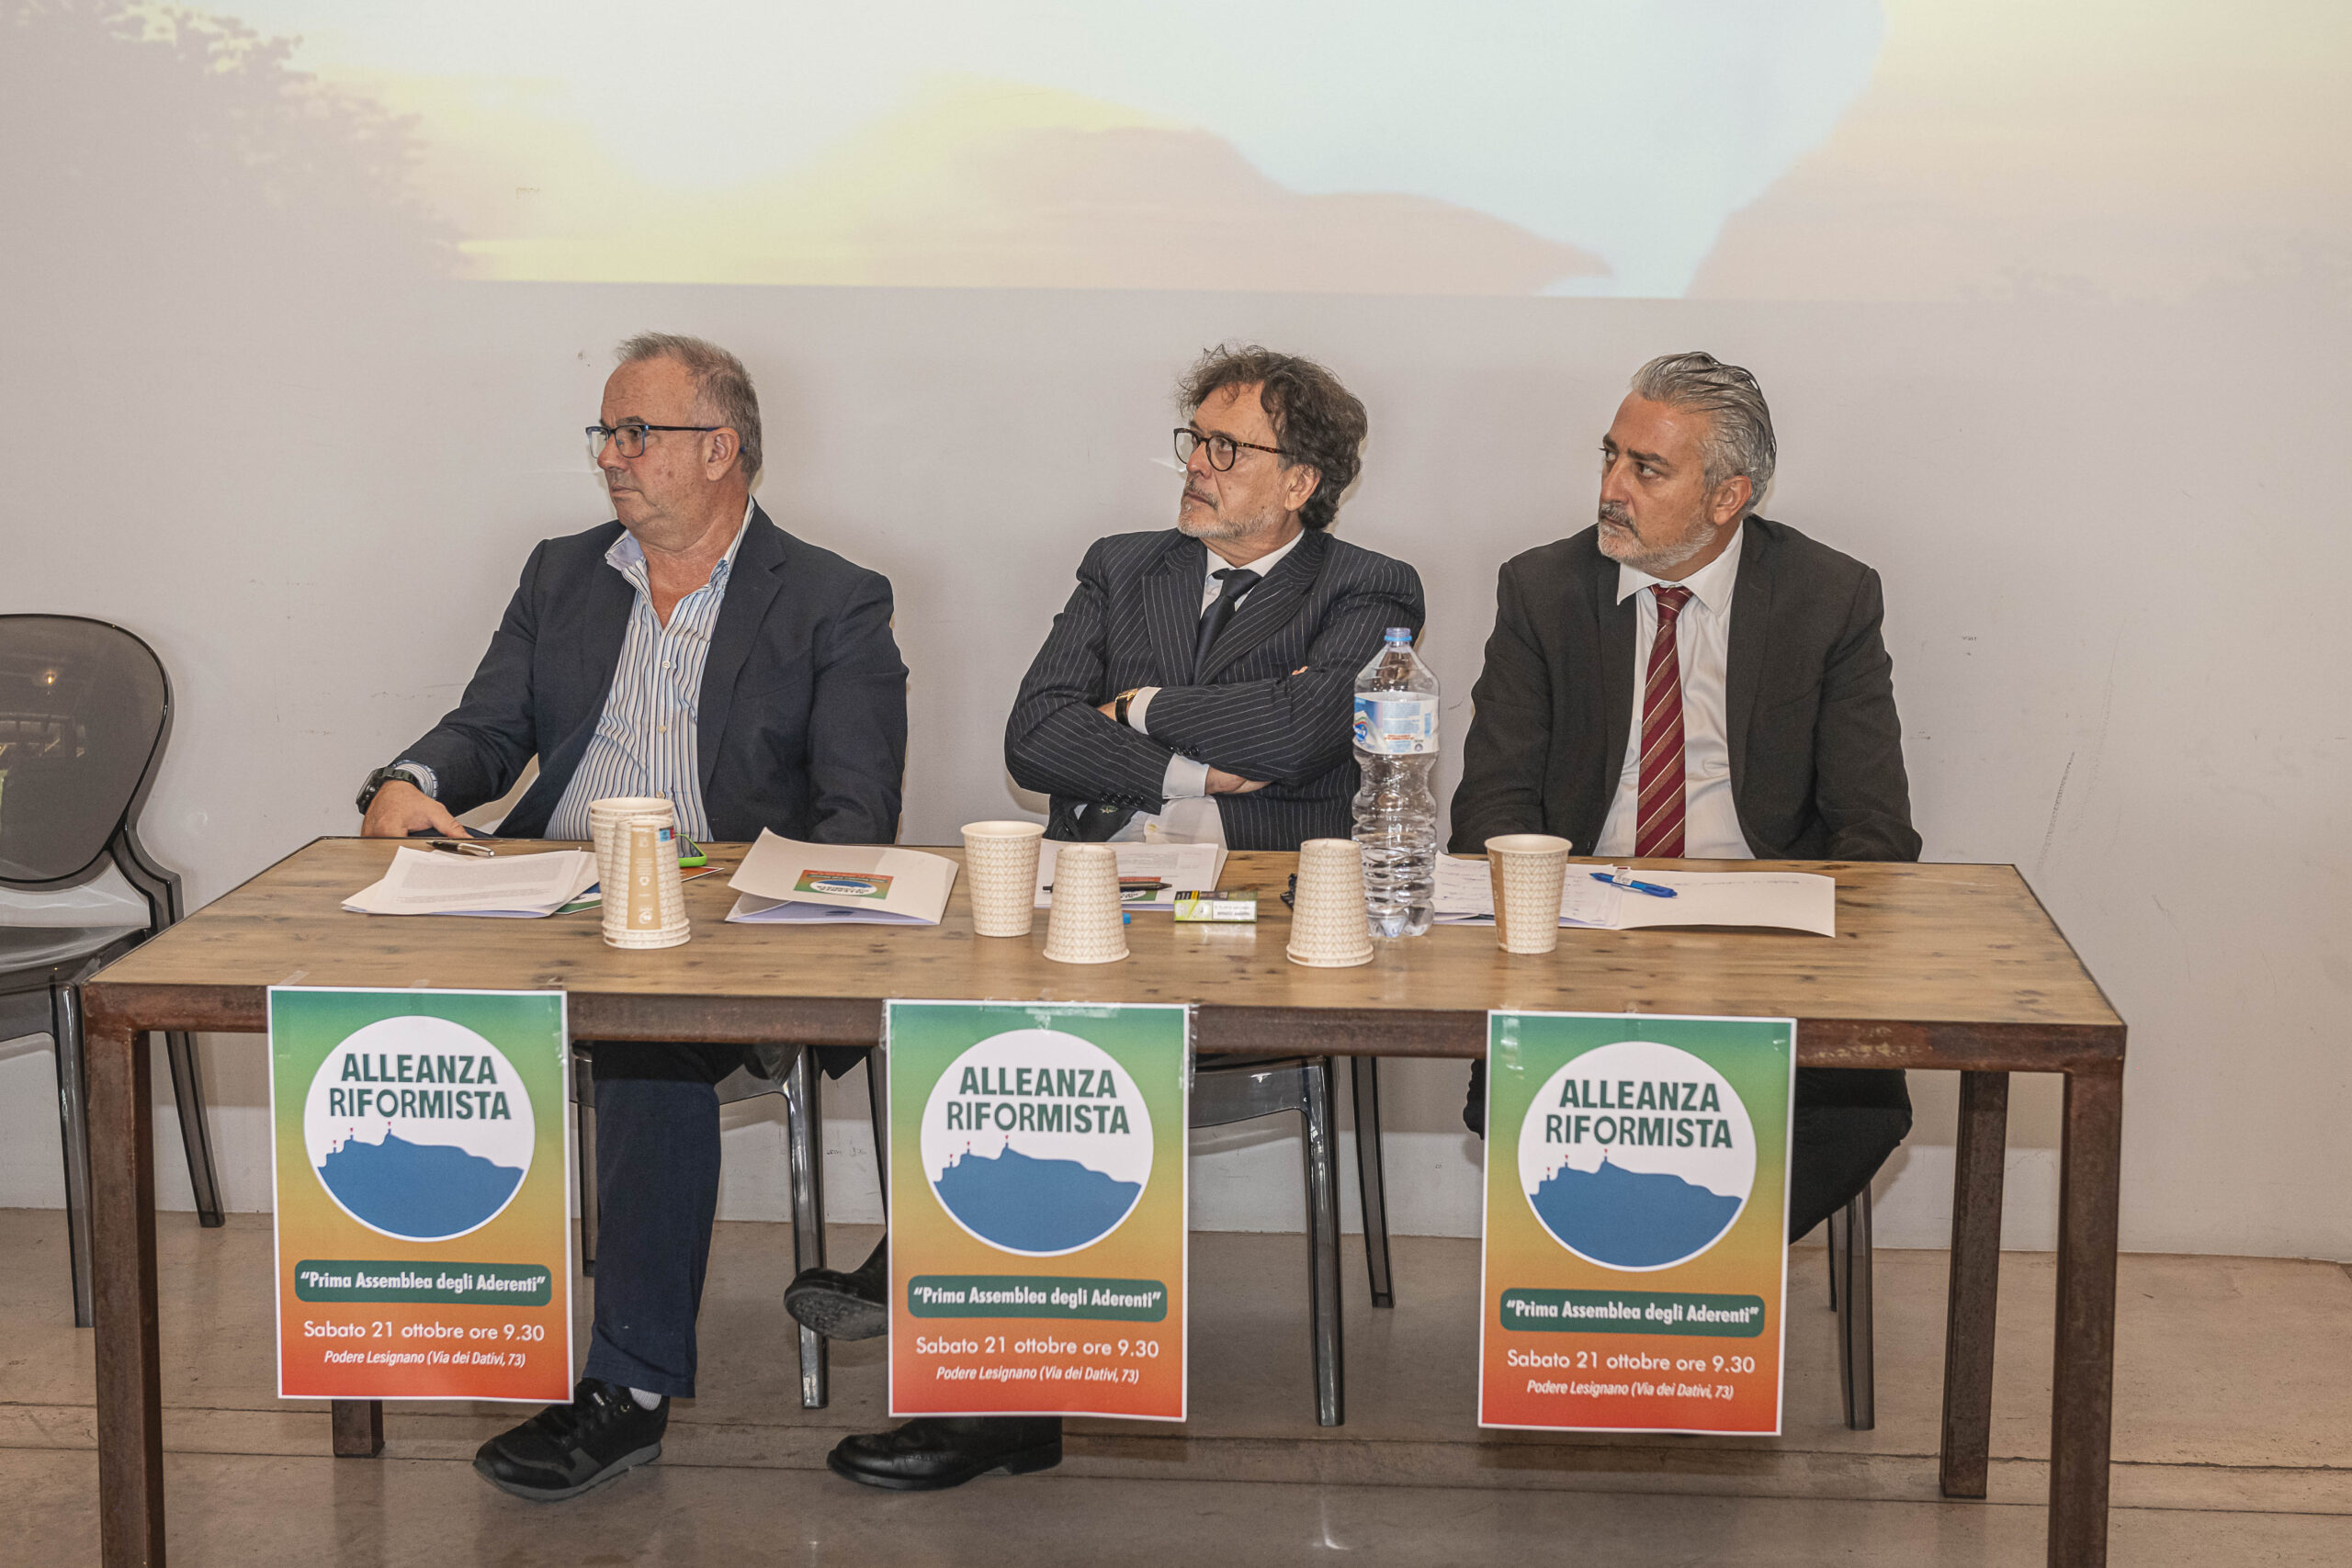 San Marino. Alleanza riformista: “Pronta la nostra proposta programmatica per il benessere collettivo”